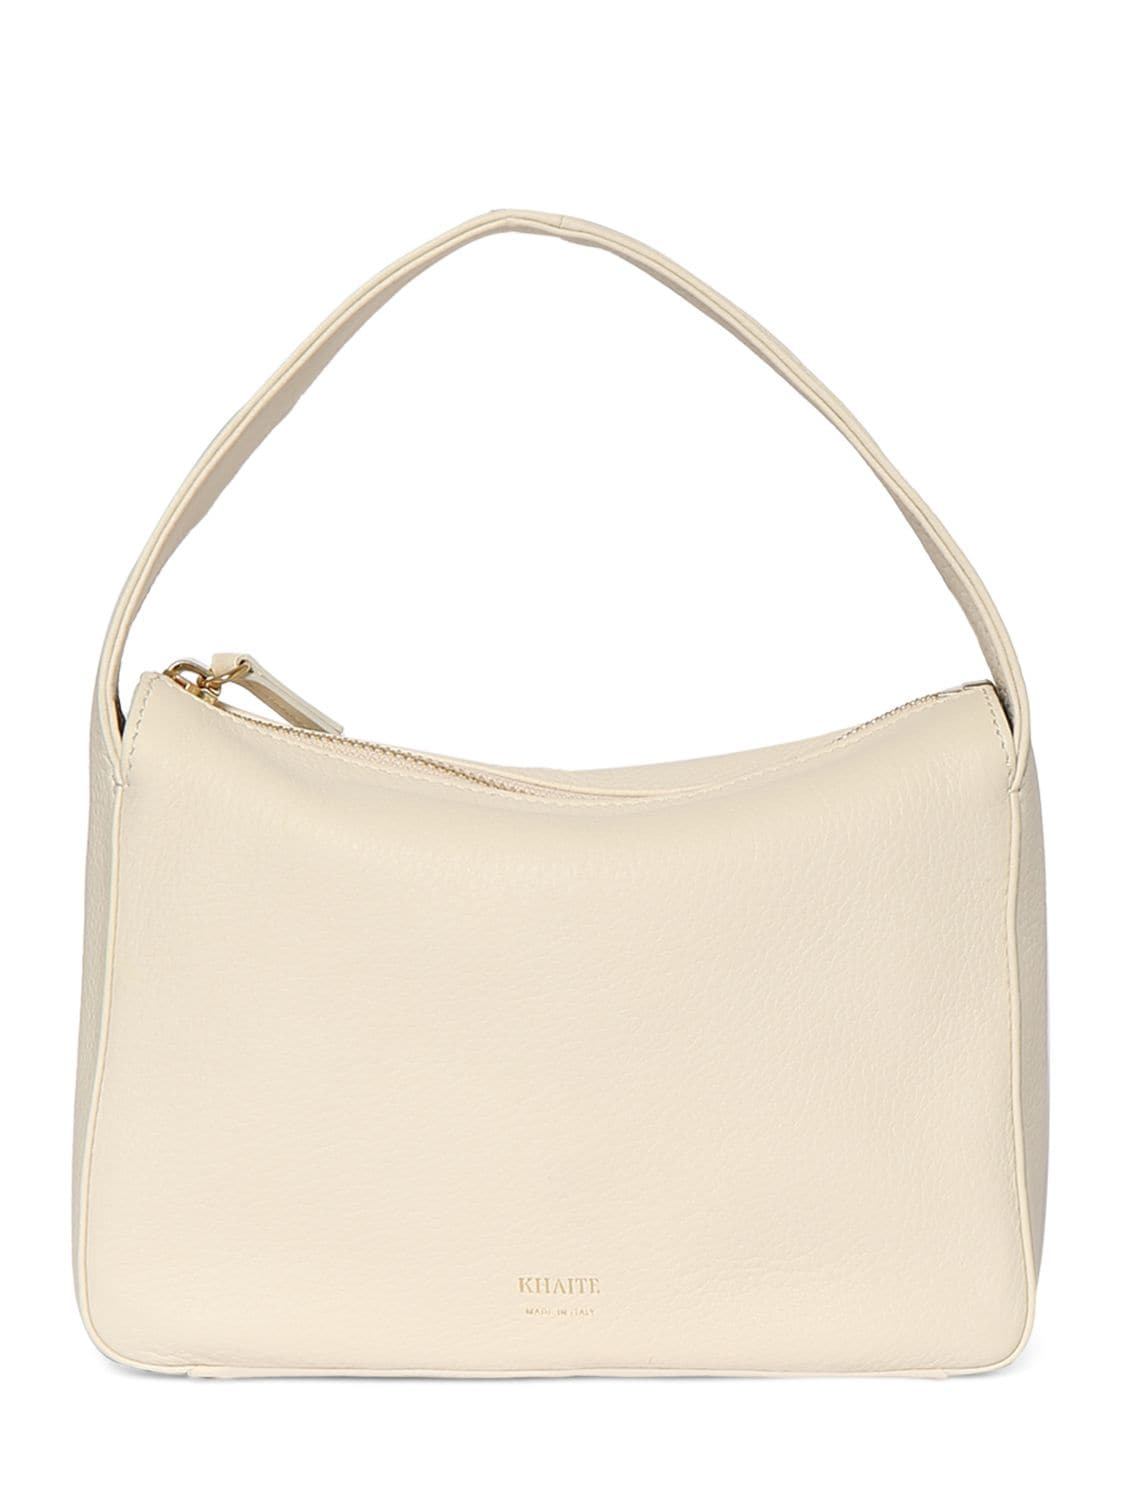 Khaite Small Elena Leather Handbag In Off White